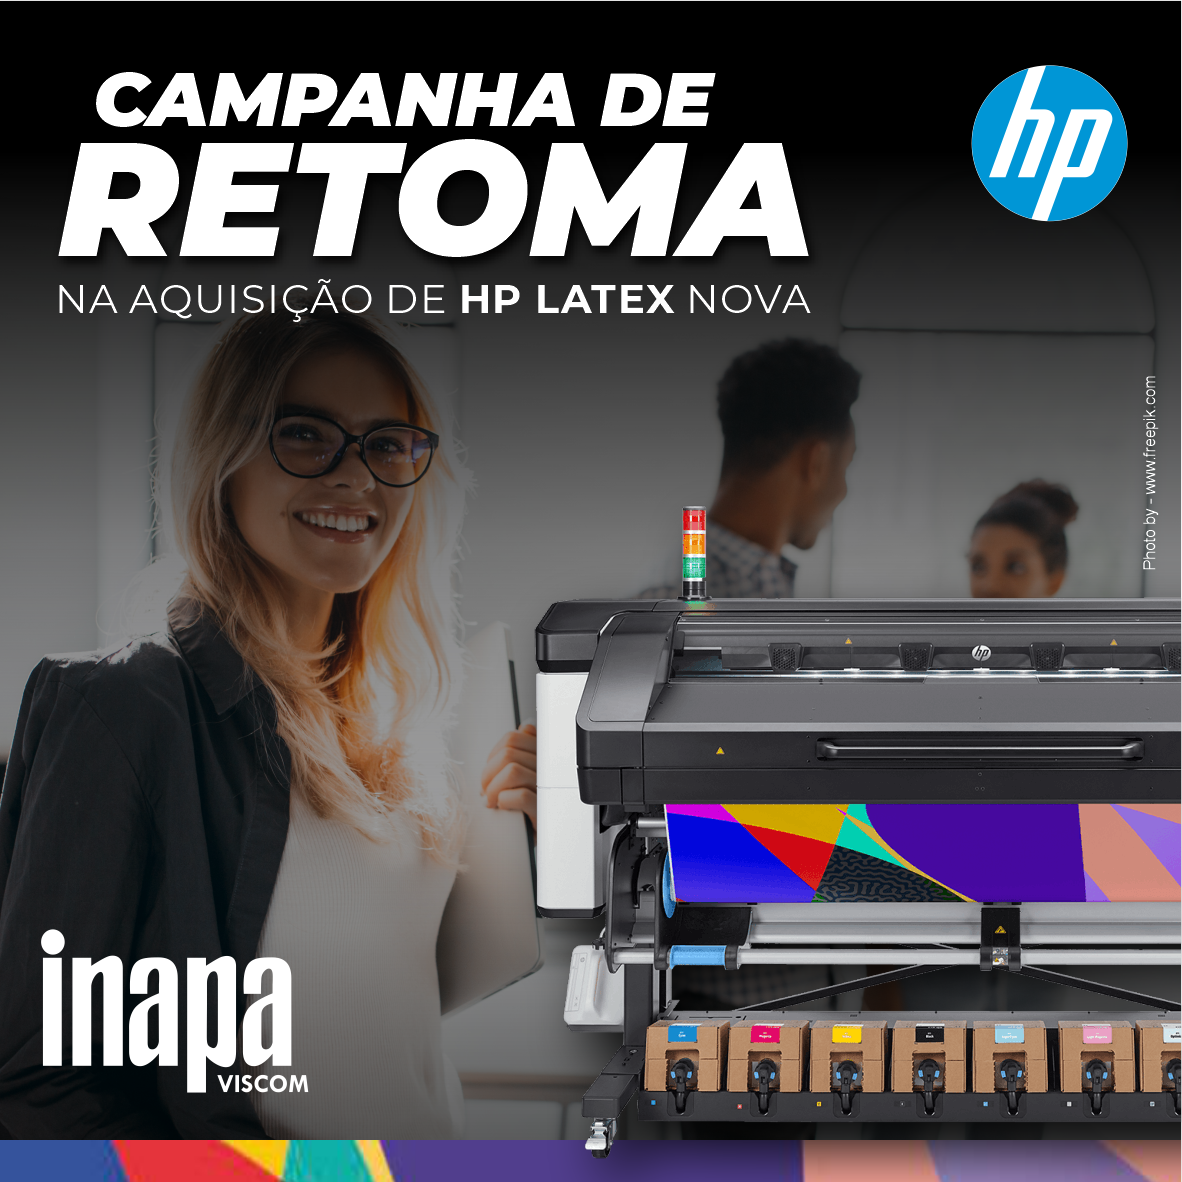 CAMPANHA DE RETOMAS HP